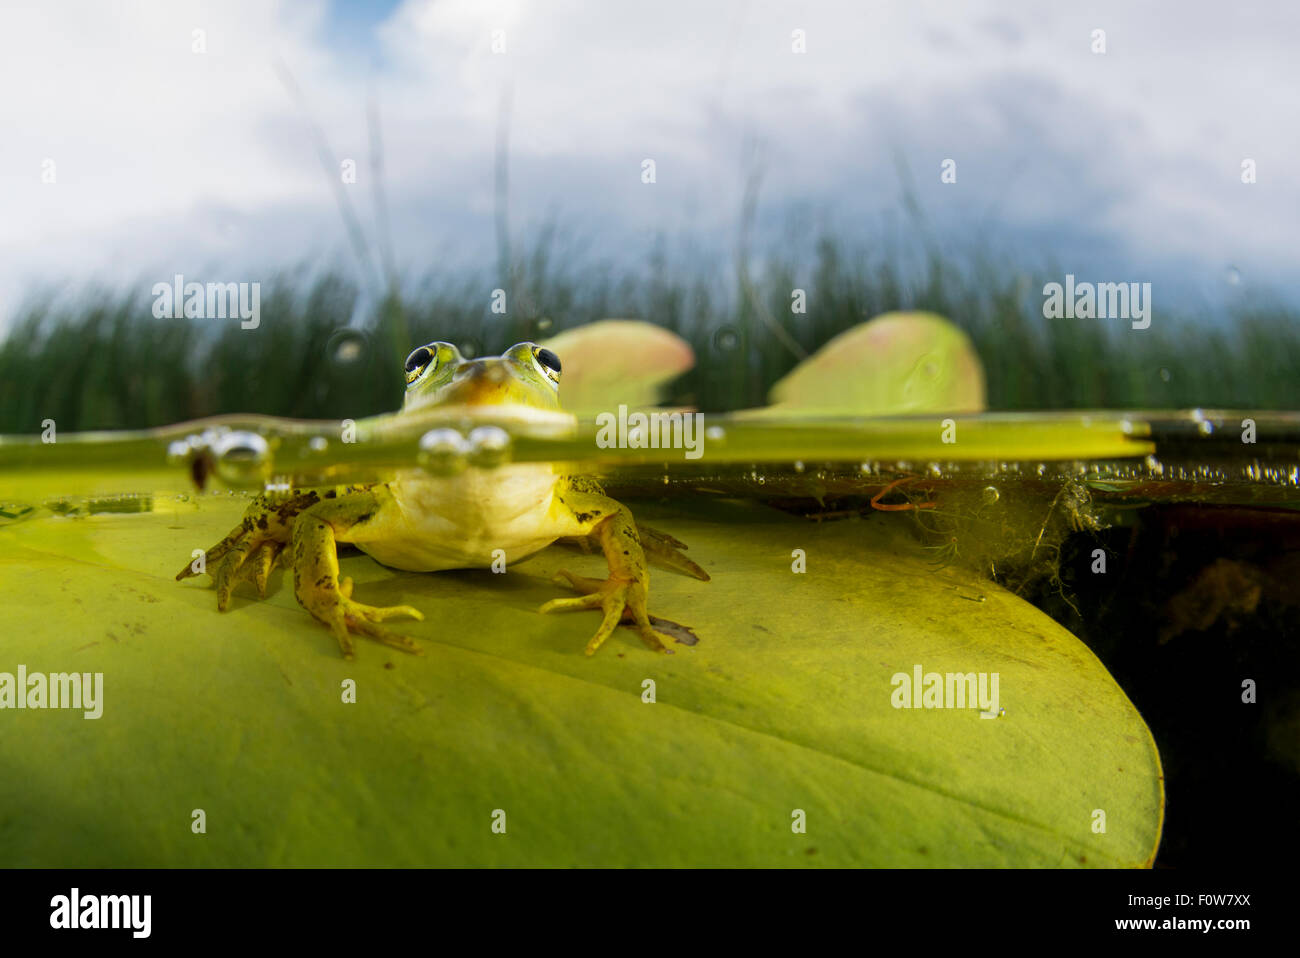 Frog Pelophylax lessonae (piscine) sur une feuille de nénuphar, Crisan, Delta du Danube, en Roumanie, en juin. Banque D'Images